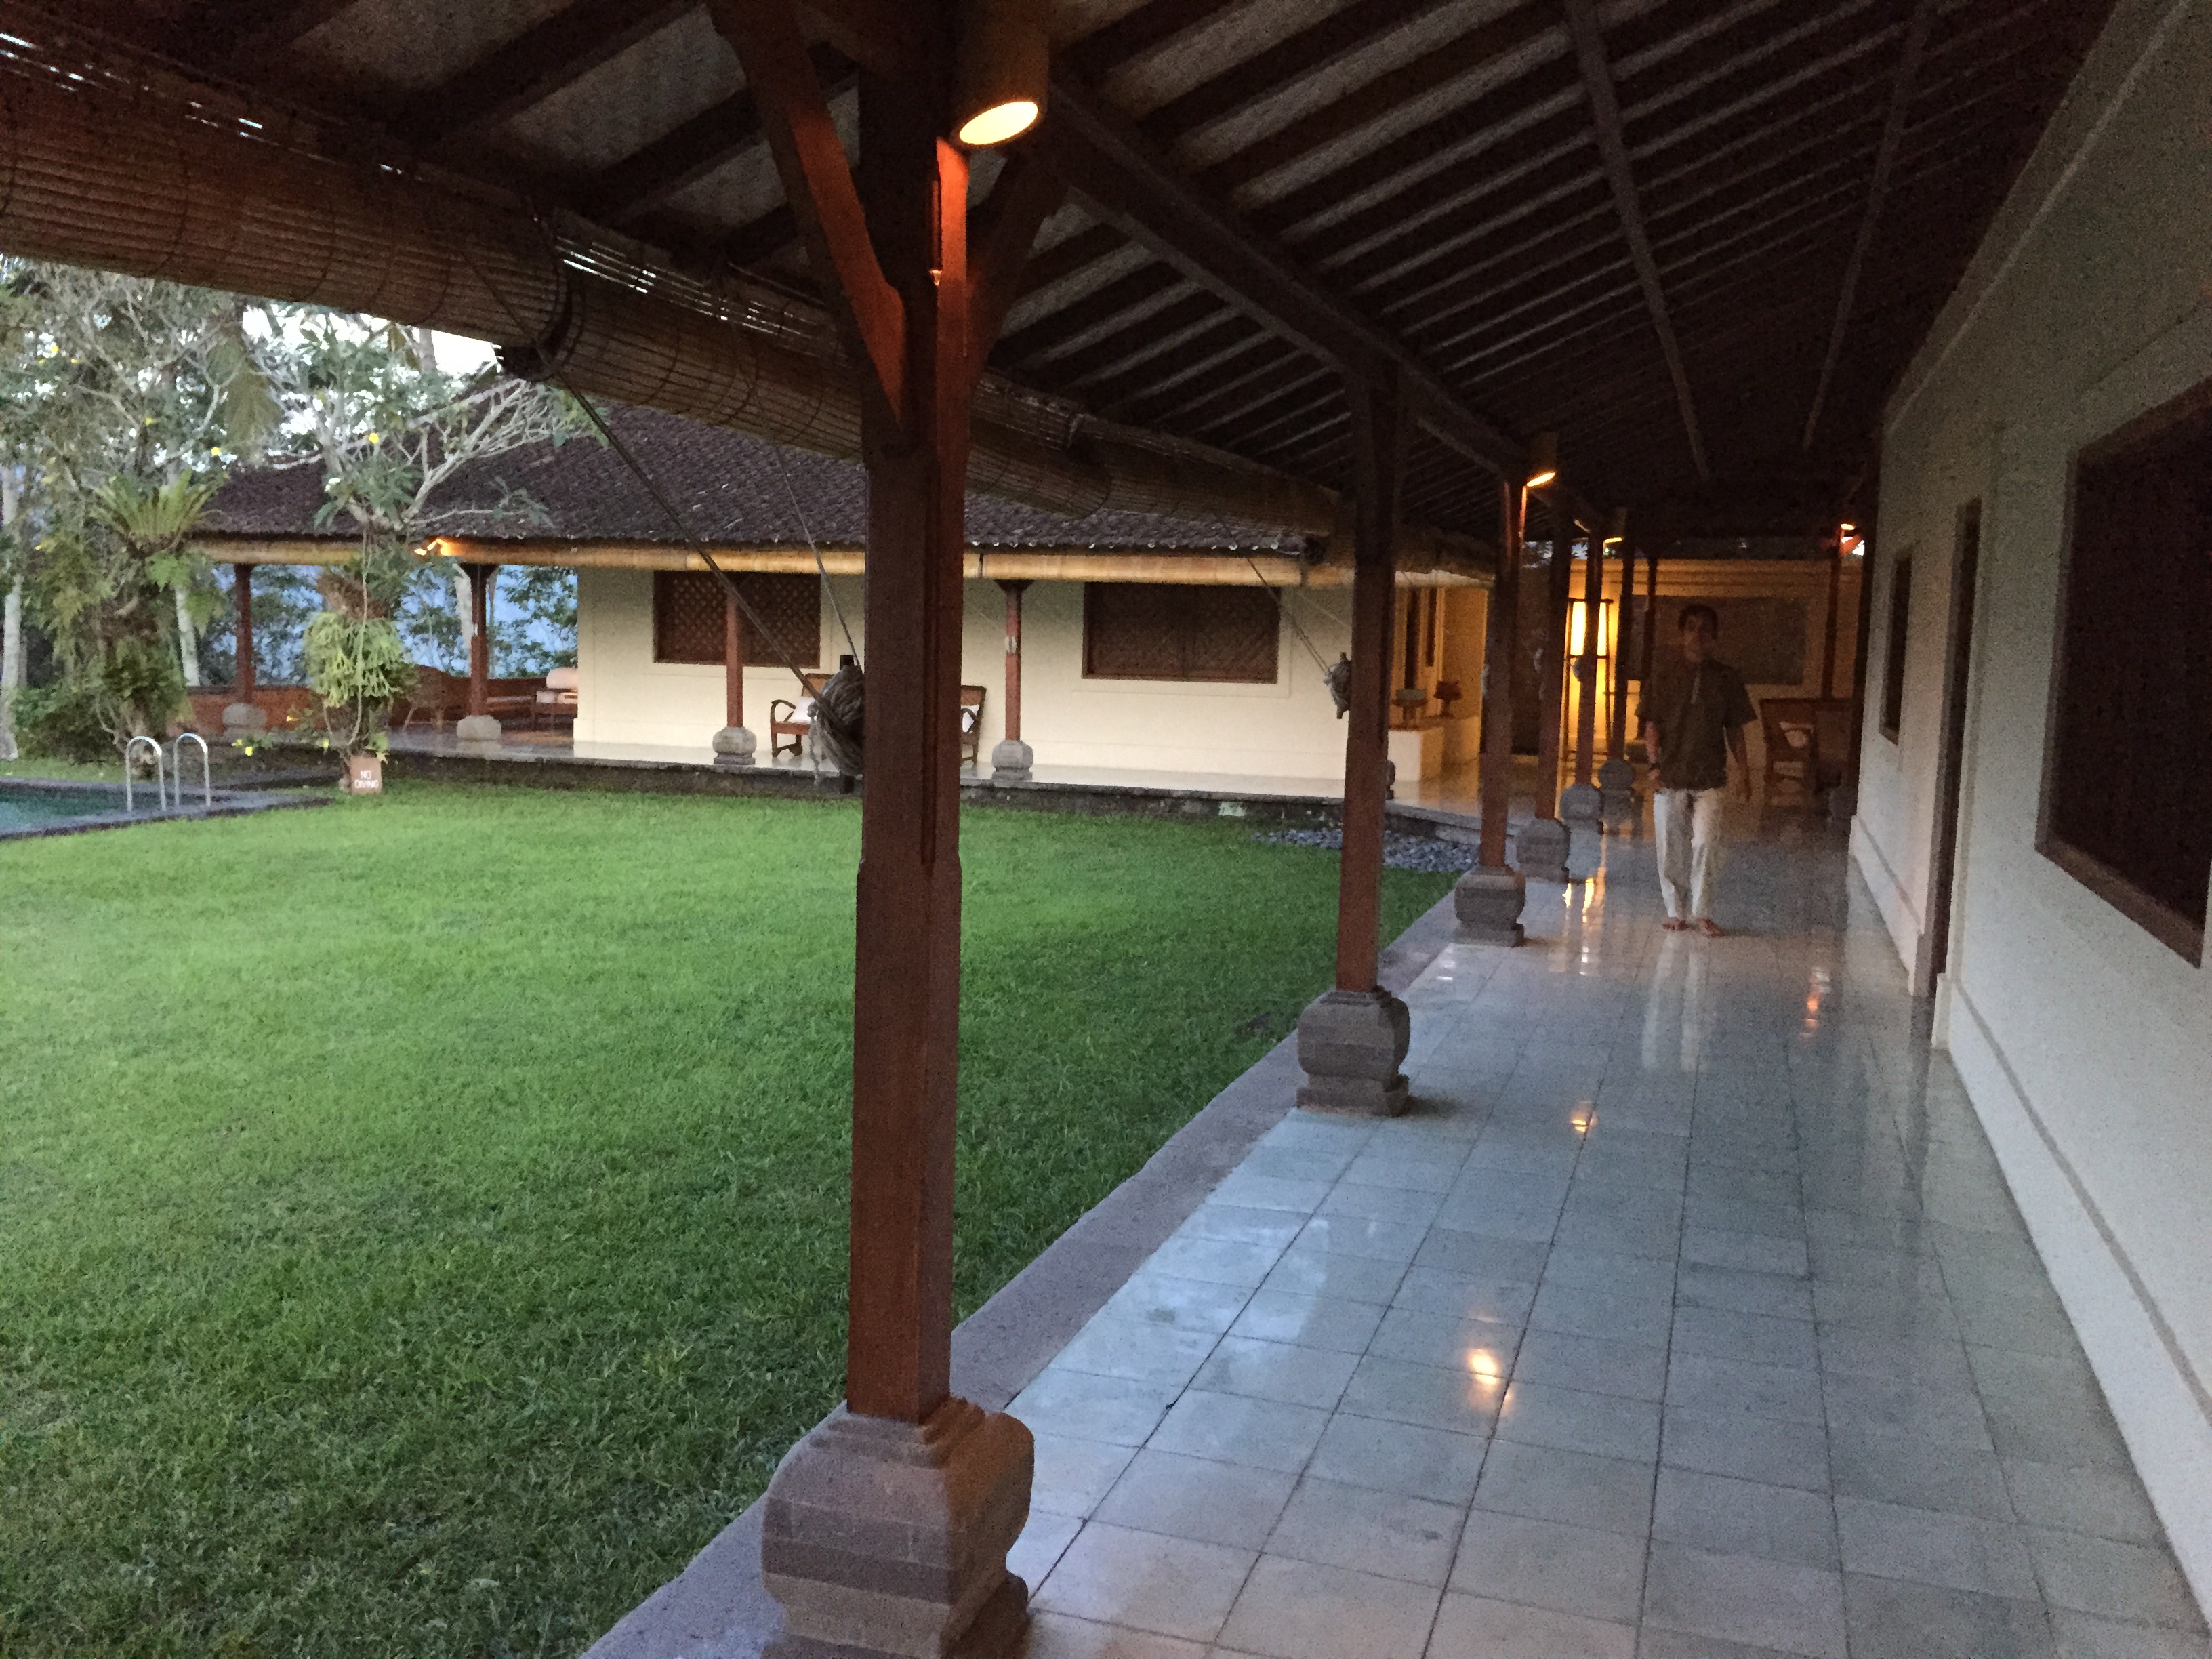 2127Hospedarse en Villa Idanna, uno de los mejores secretos guardados de Bali. Indonesia